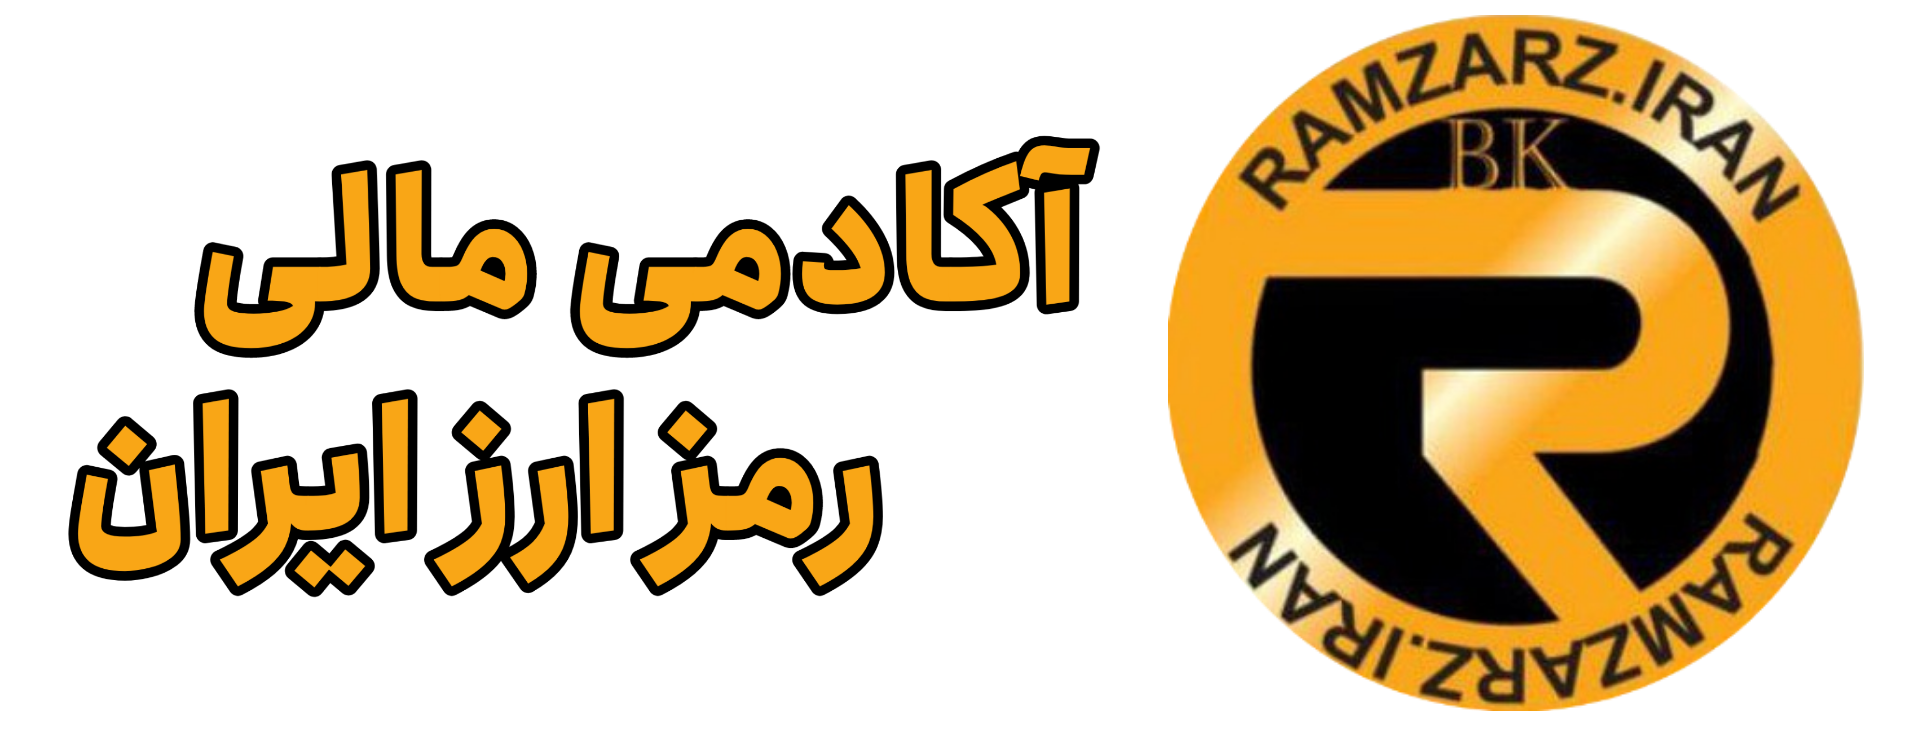 رمز ارز ایران